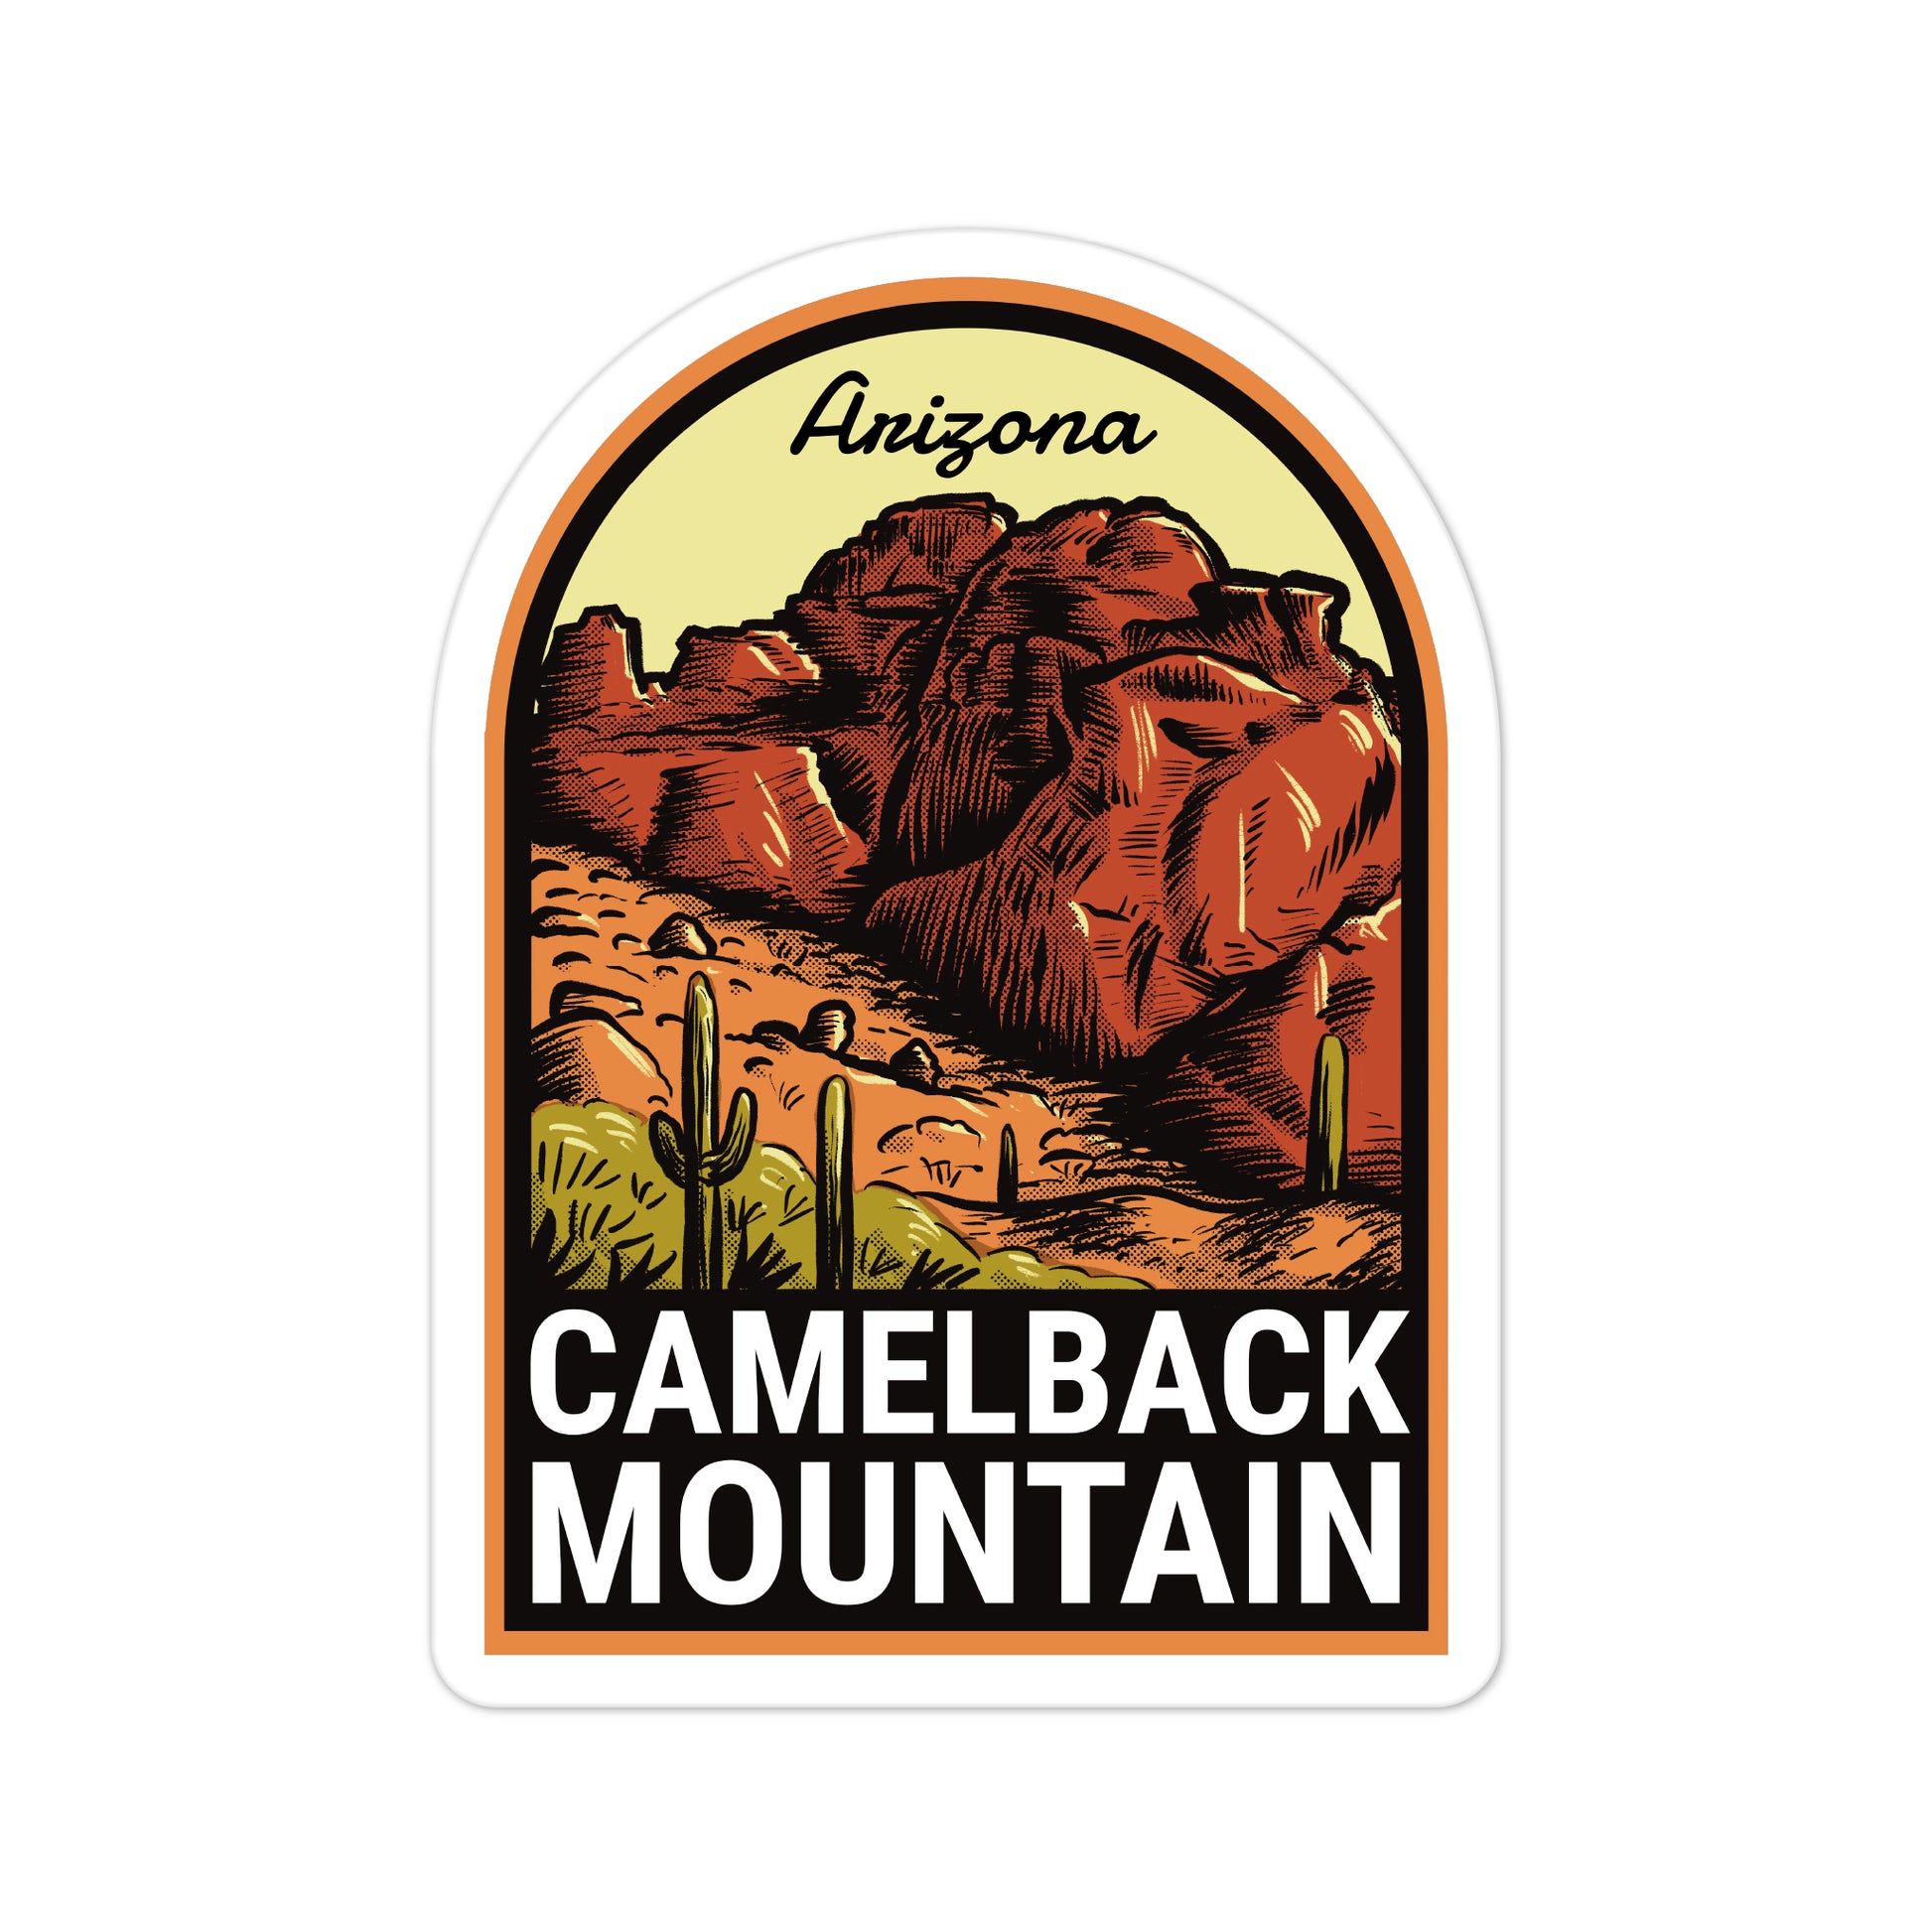 A sticker of Camelback Mountain